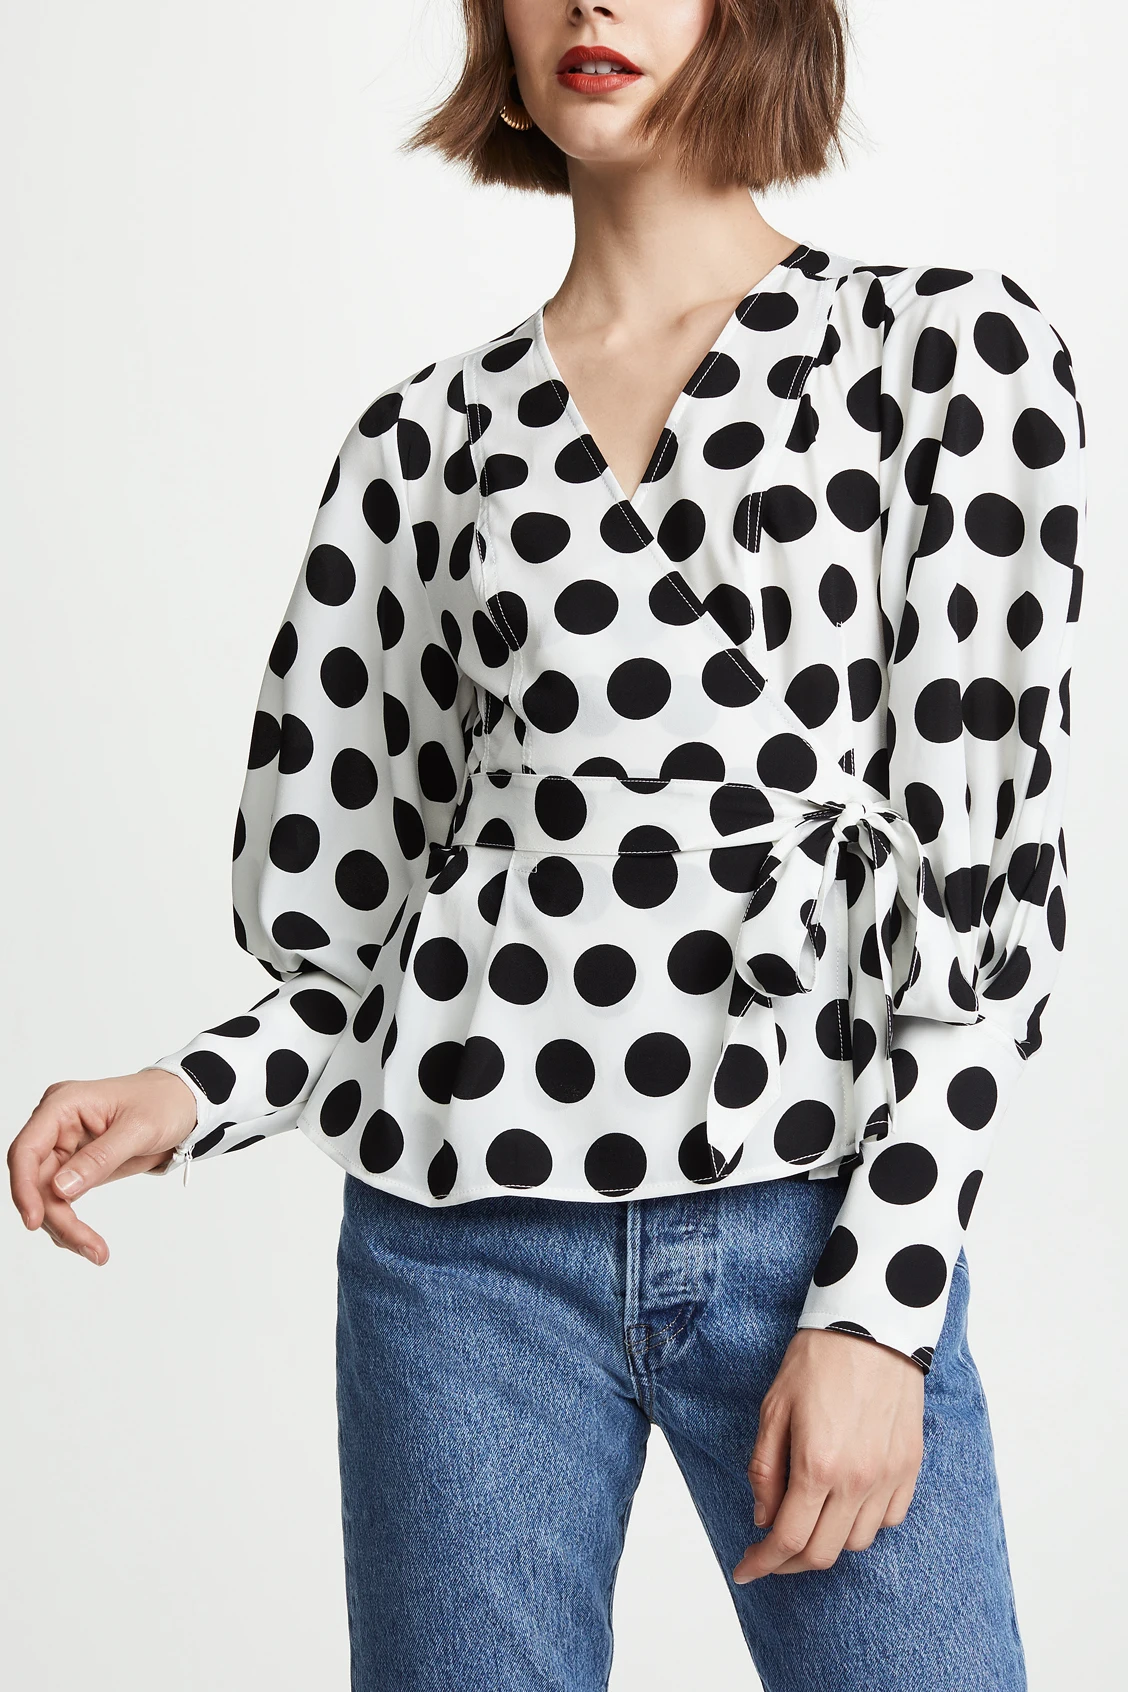 Рубашка в горошек с v-образным вырезом, на шнуровке, с рукавом-фонариком и поясом, тонкая элегантная короткая модная блузка высокого